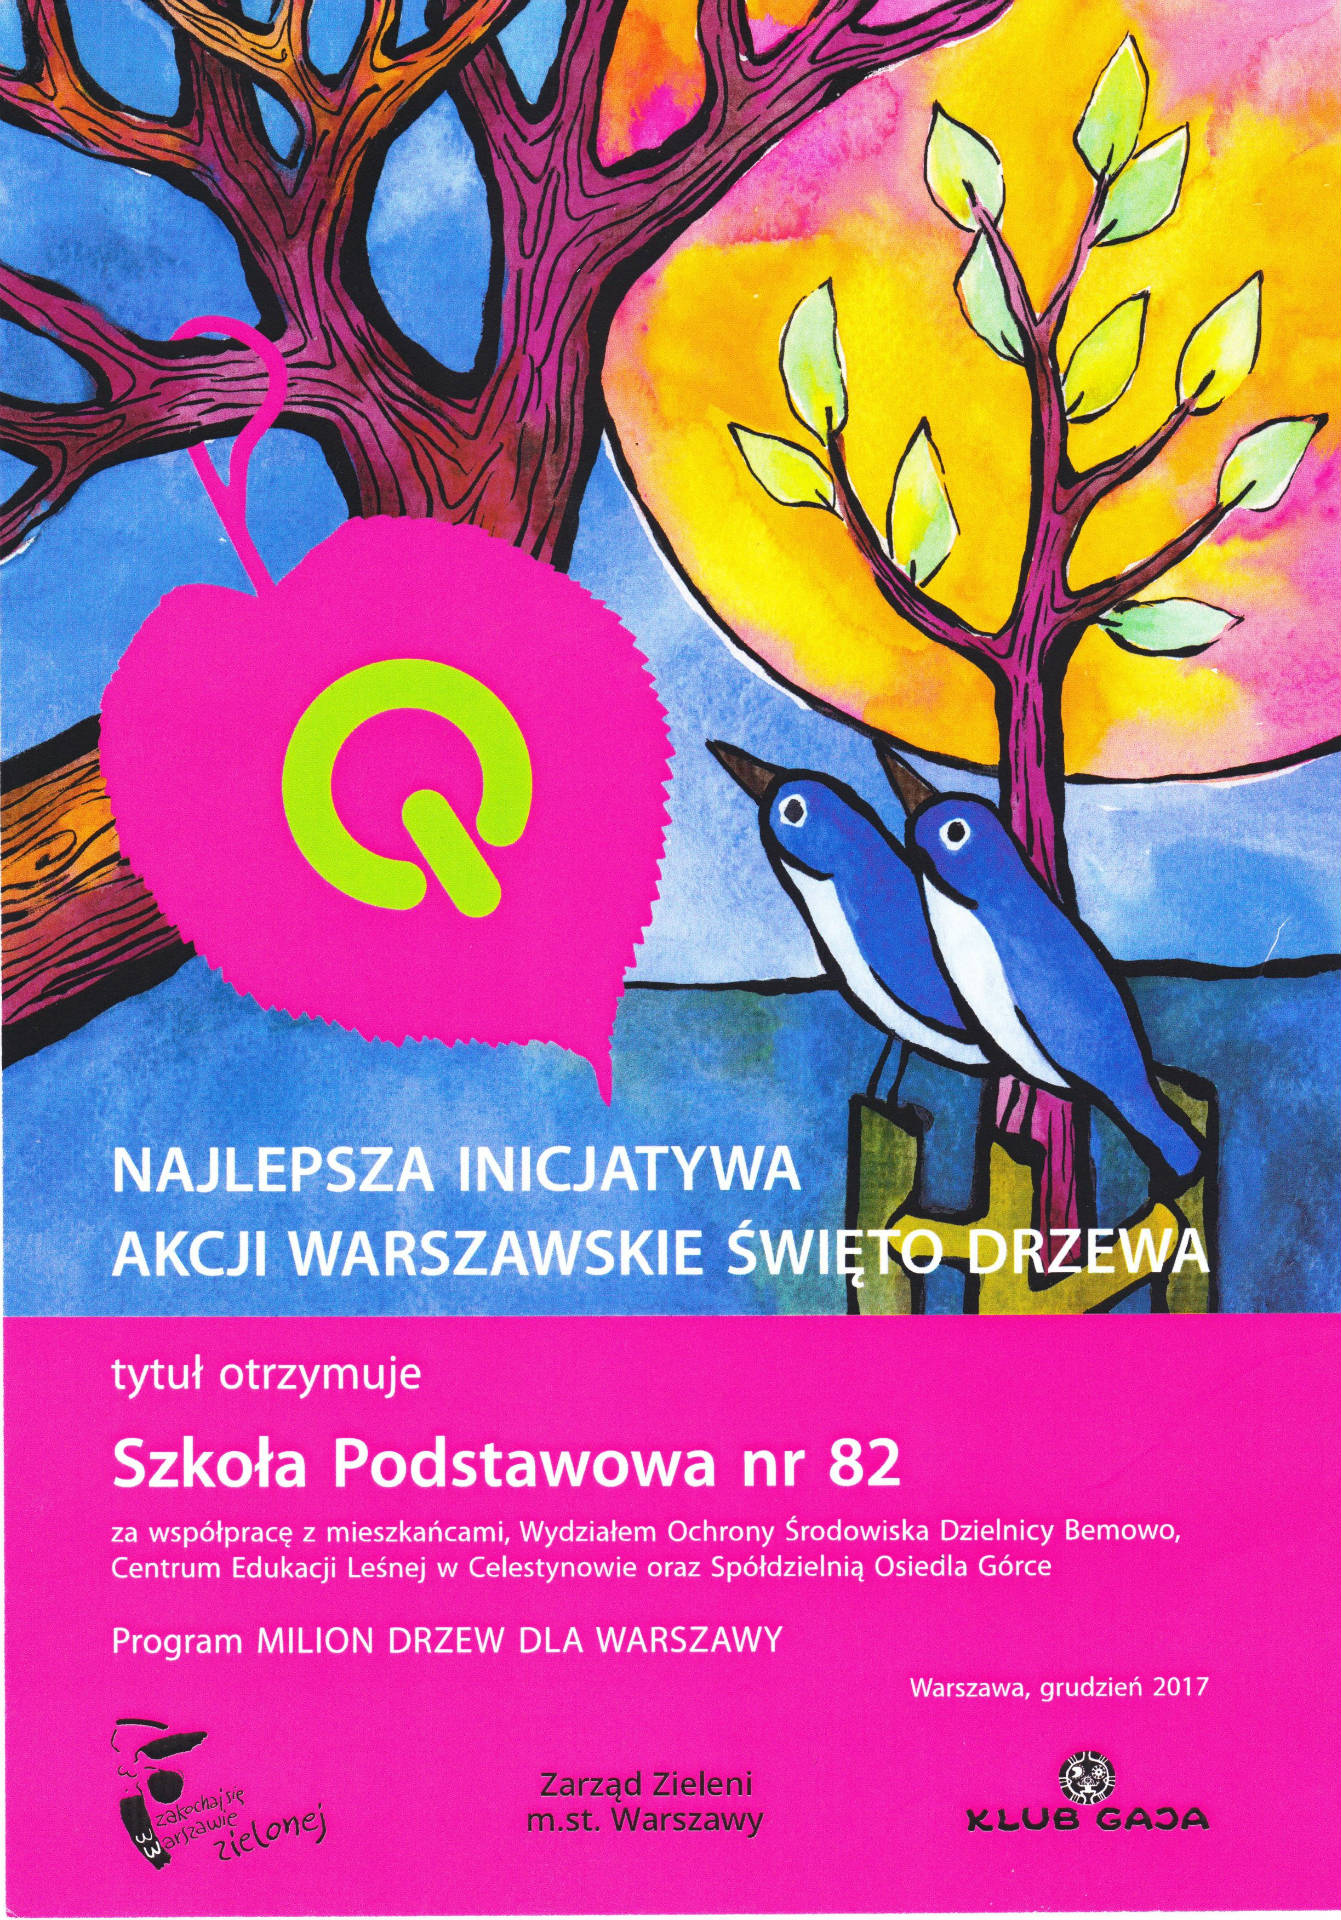 âNajlepsza inicjatywa akcji Warszawskie ÅwiÄto Drzewaâ dla SP  nr 82 - Obrazek 1